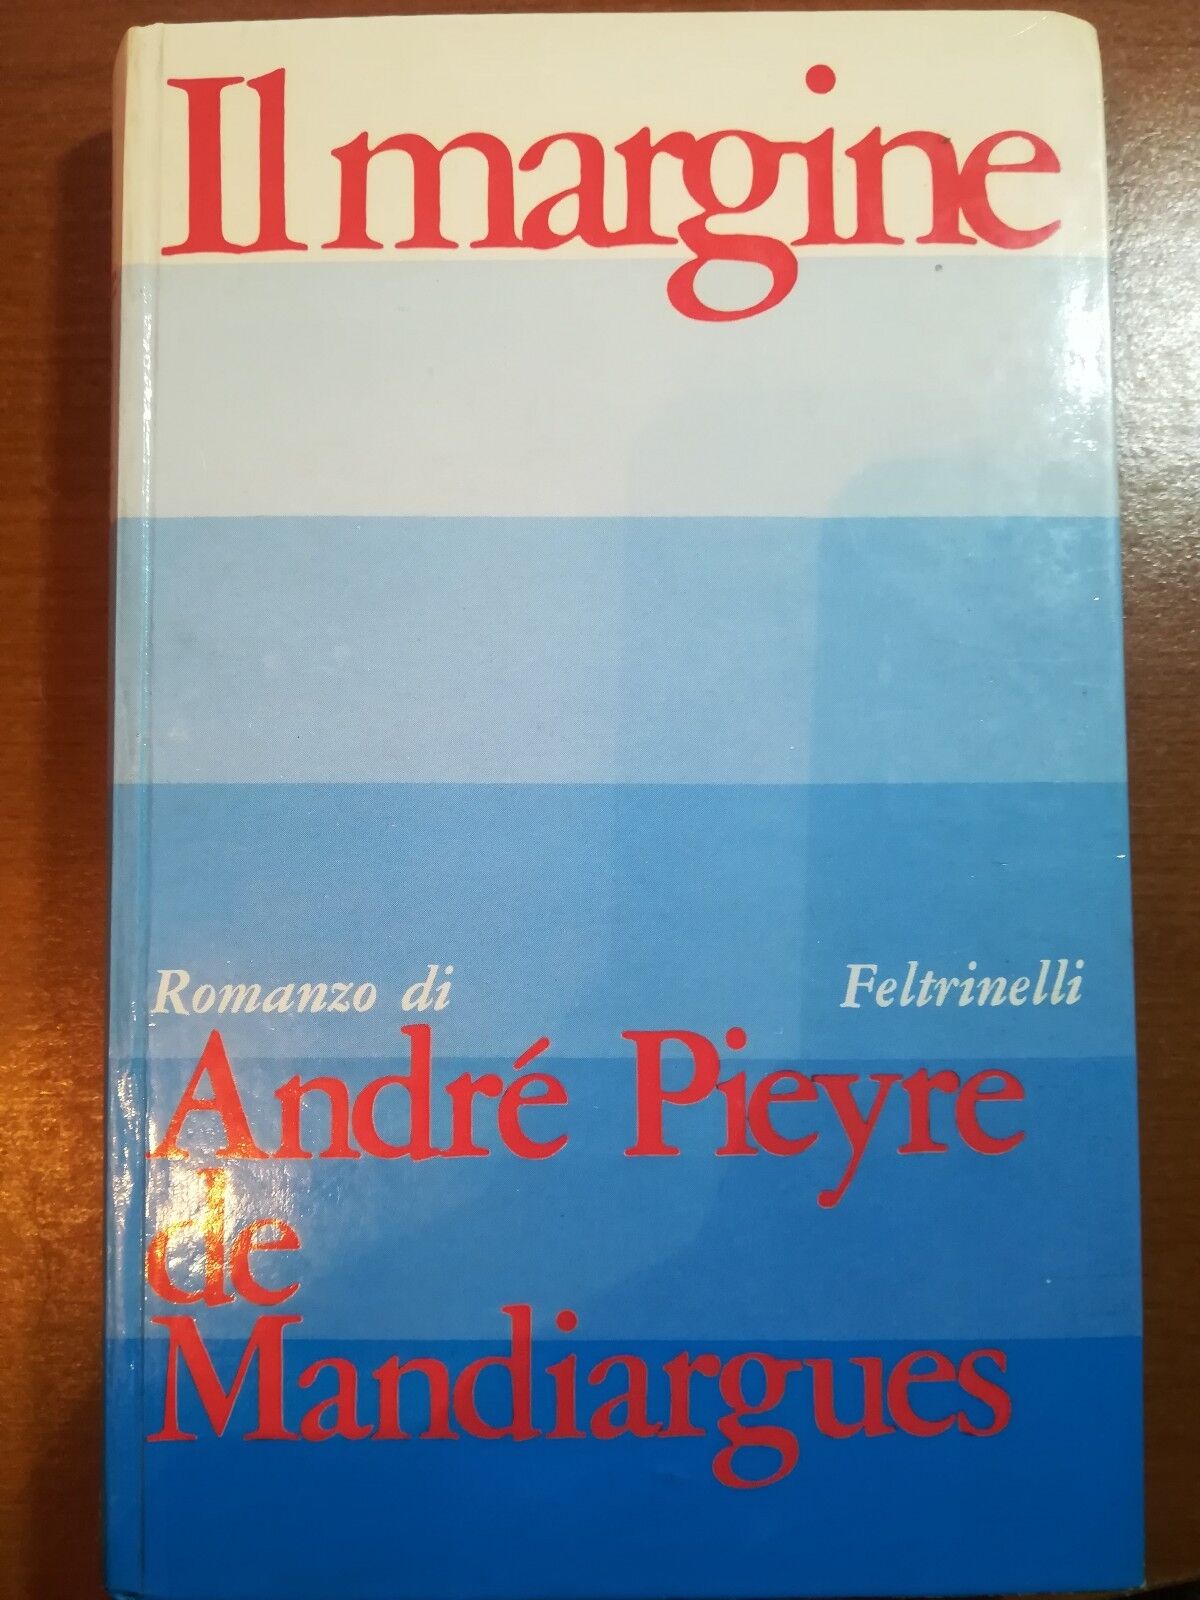 Il margine - Andr? Pieyre e Mandiargues - Feltrinelli - 1968 - M